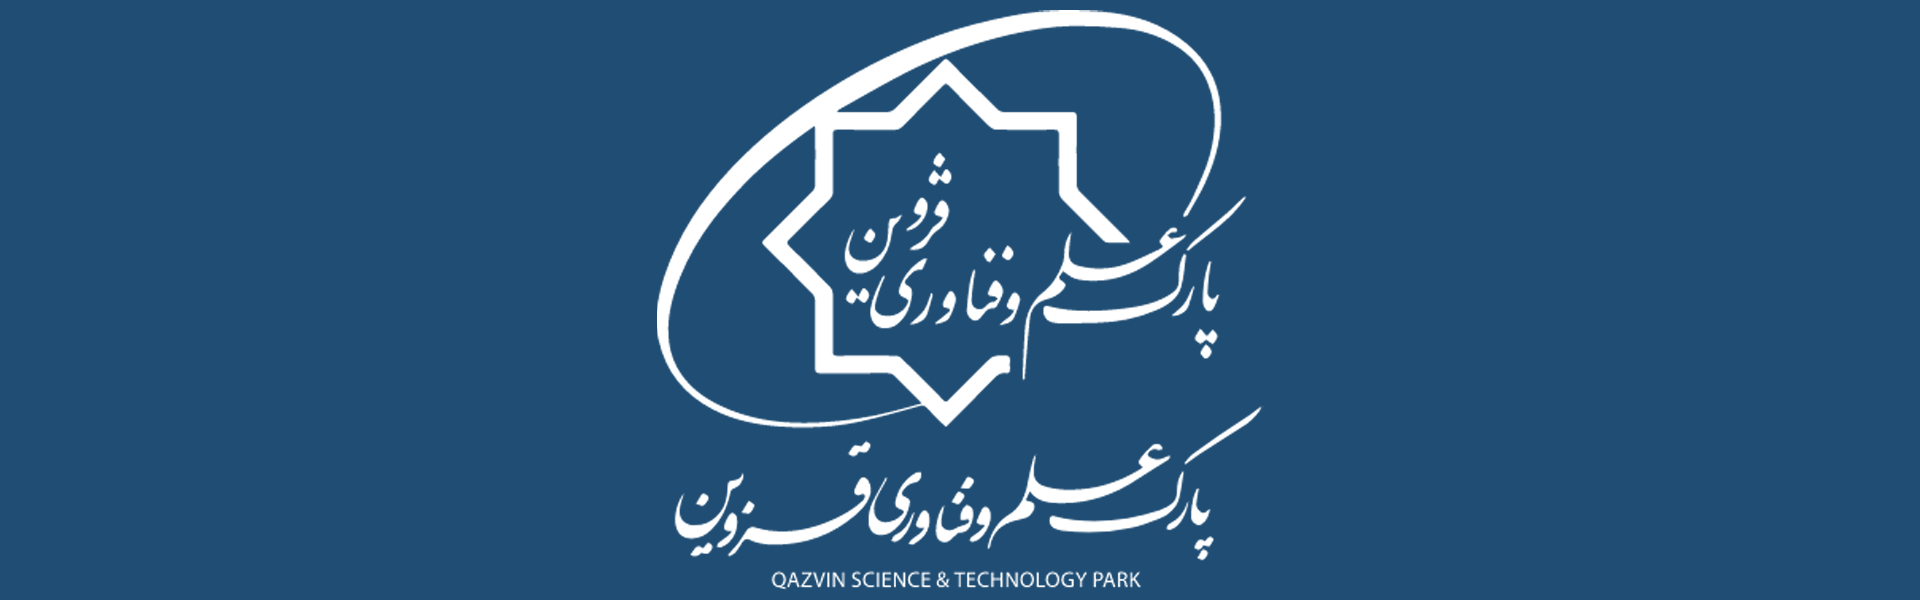 پارک علم و فناوری قزوین